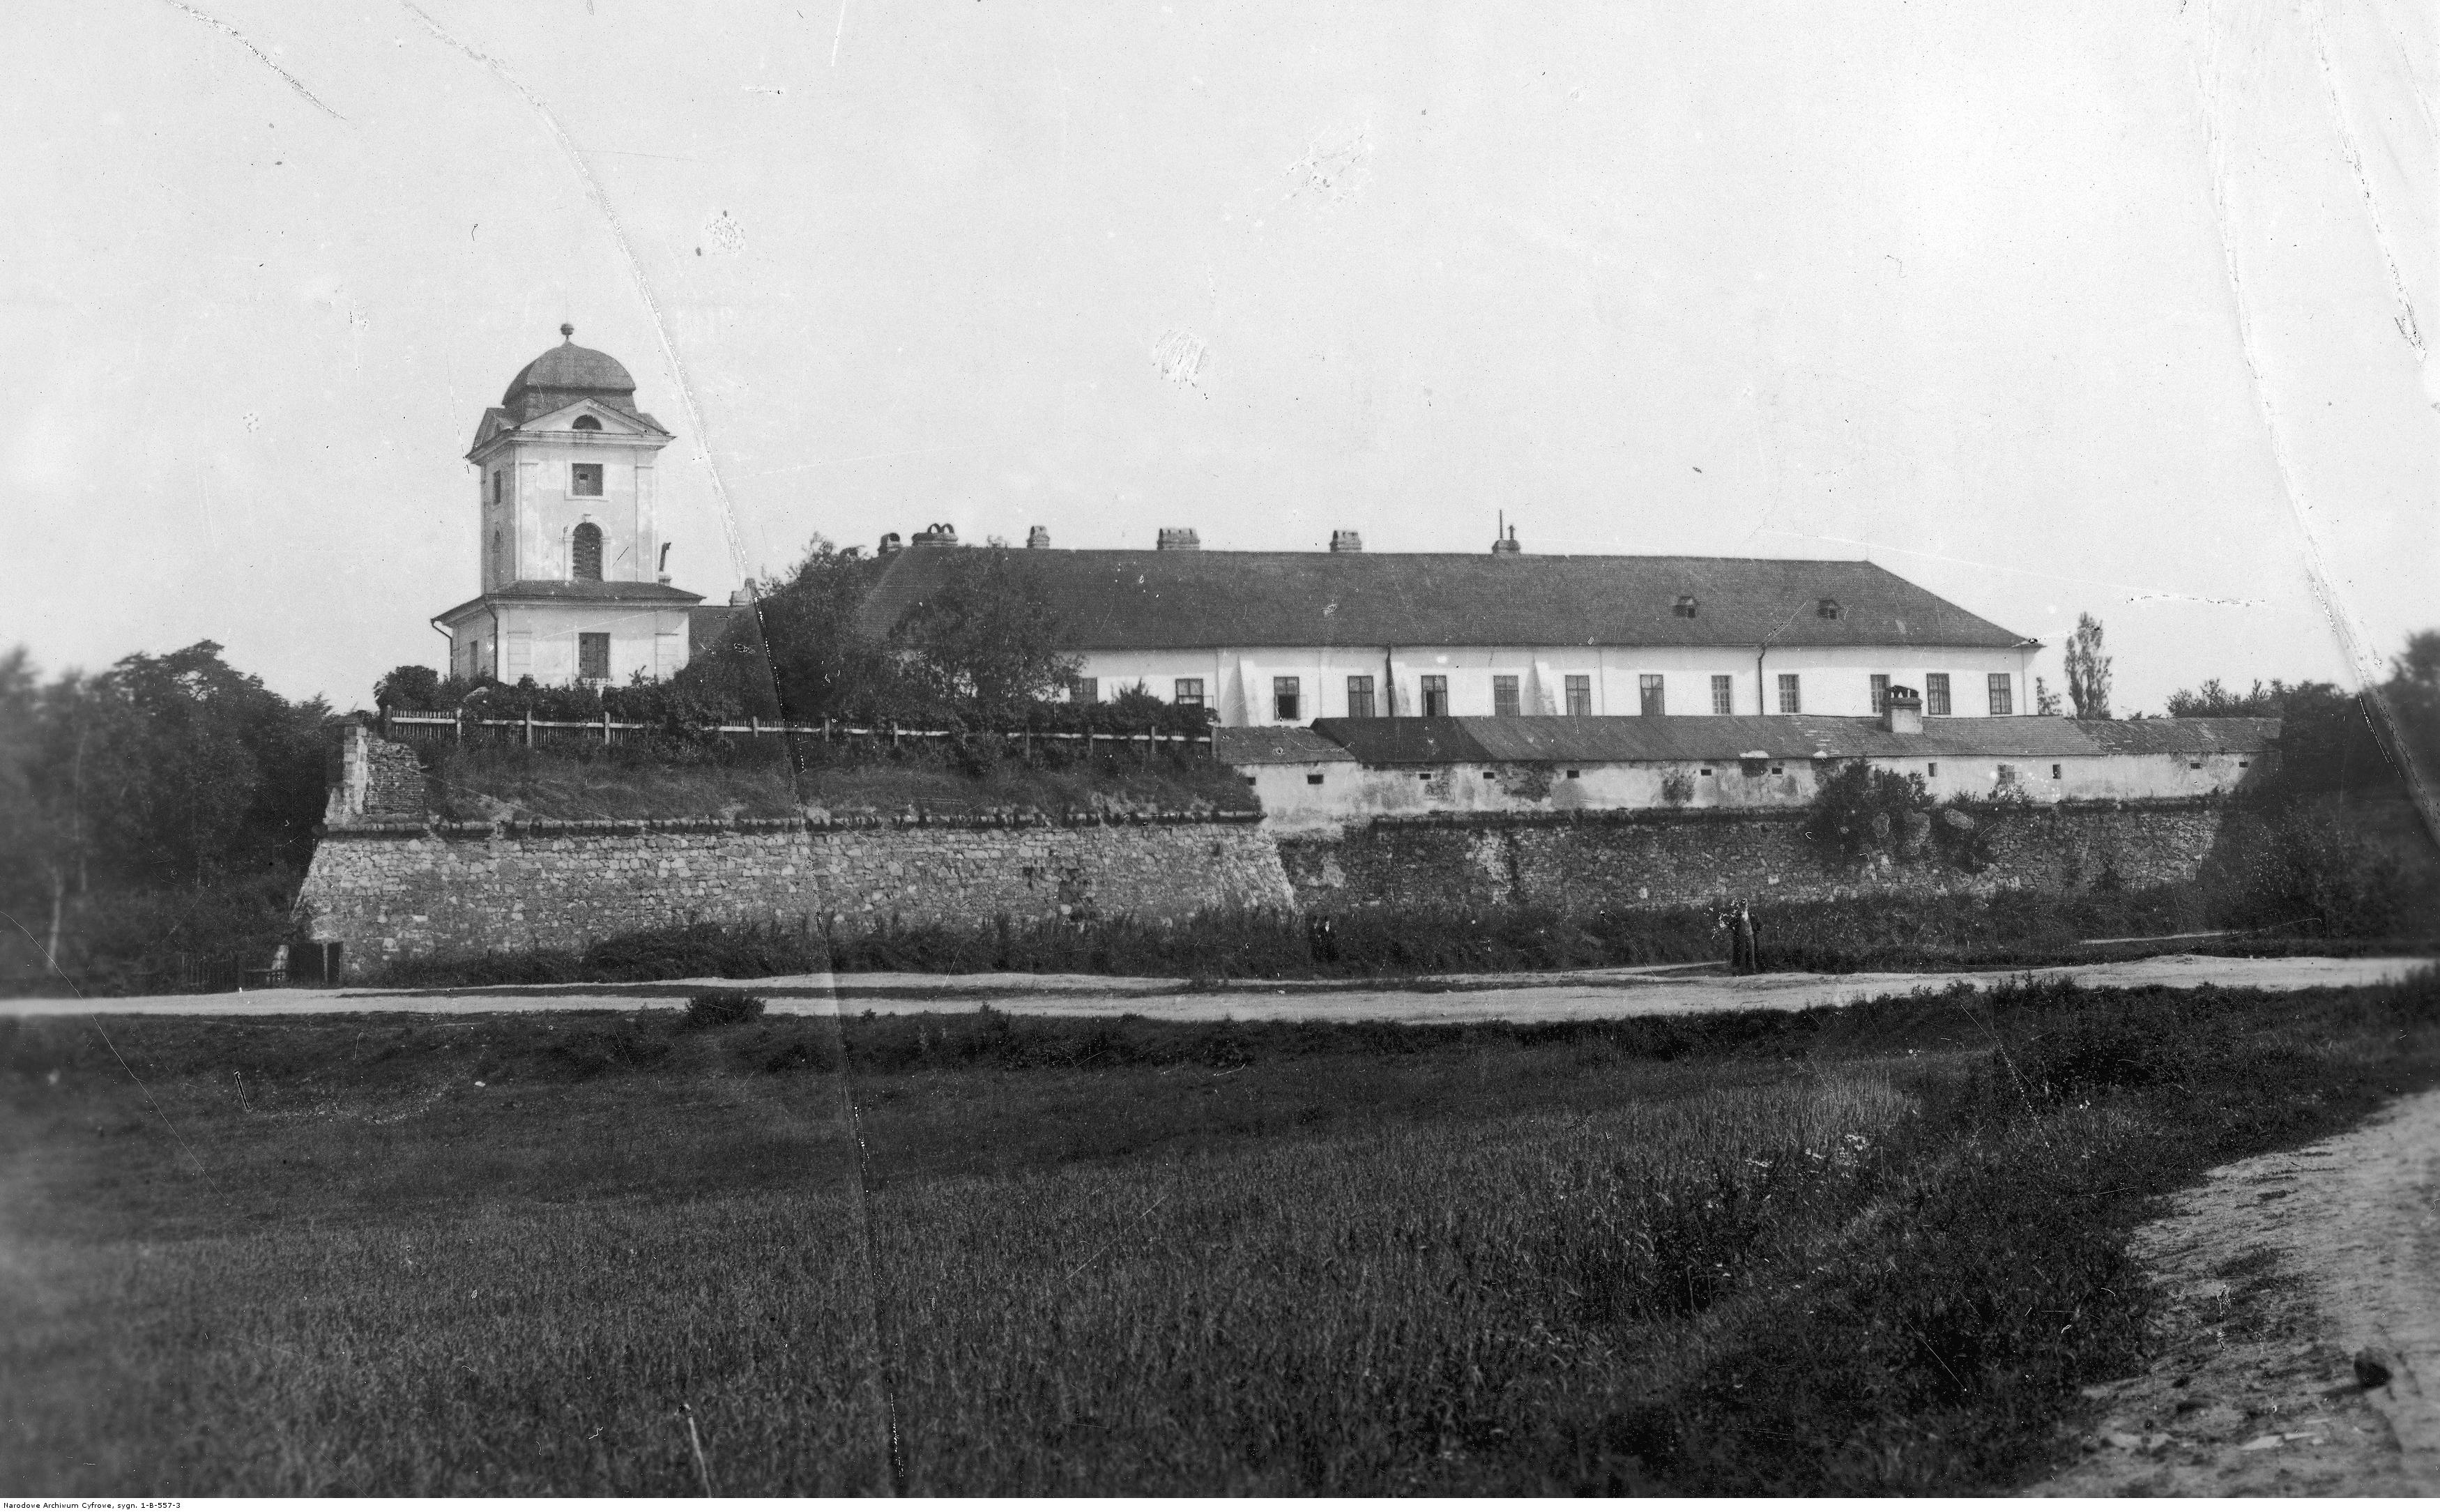 Siedziba Sądu Okręgowego w Rzeszowie znajdująca się w Zamku Lubomirskich. Widok ogólny, rok 1929- 1939